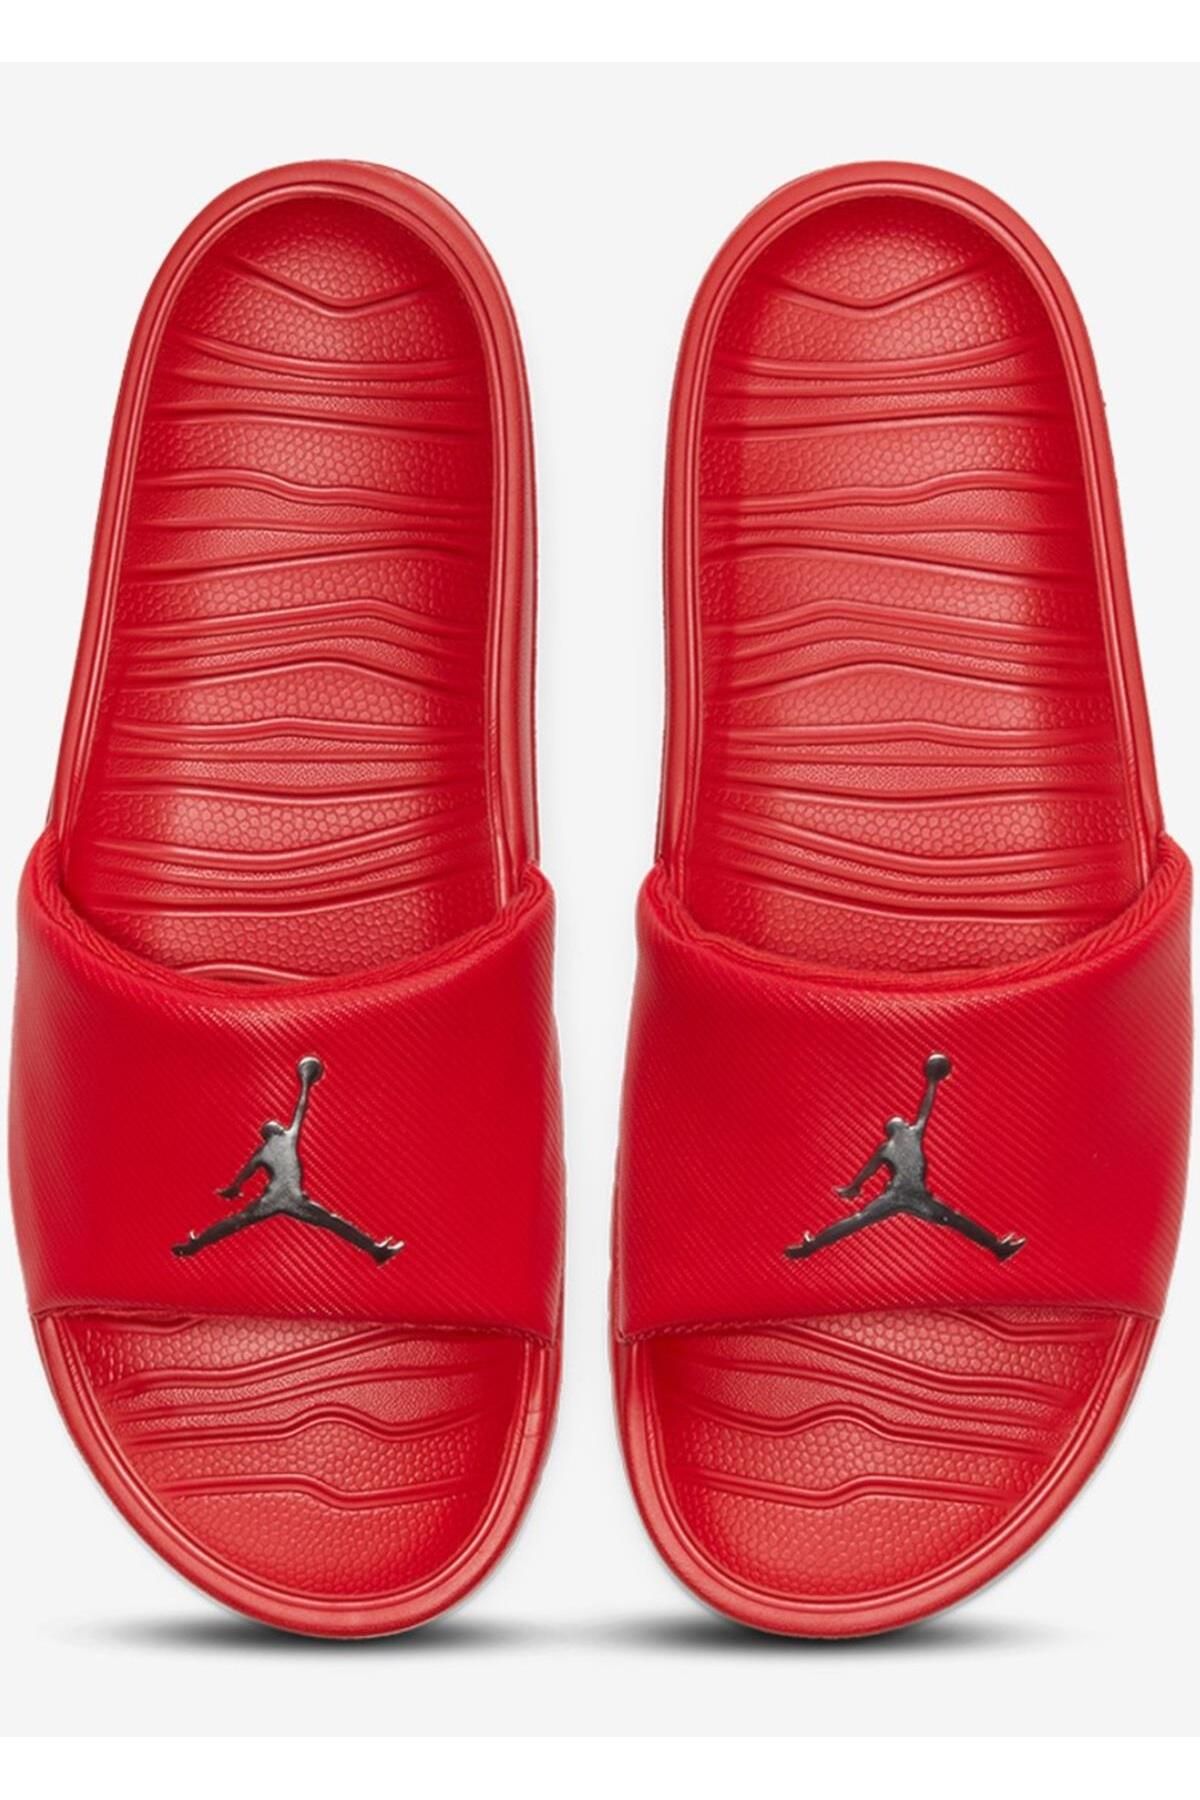 Nike Jordan Jumpman Break Red Unisex Slide Jordan Terlik Kırmızı